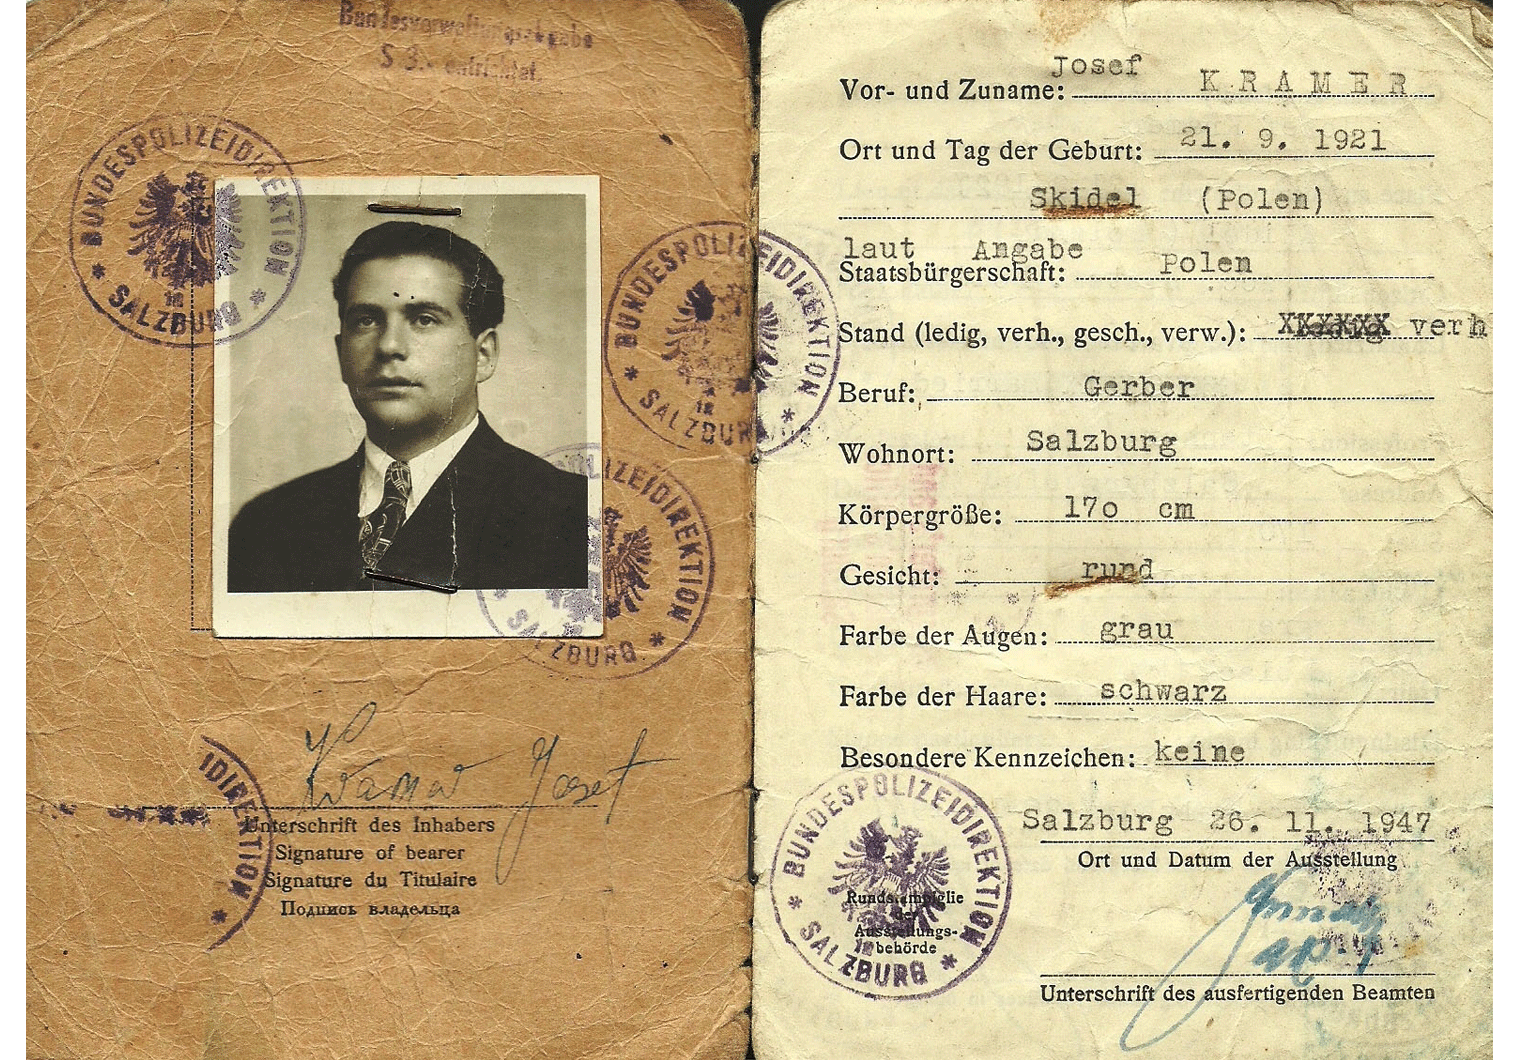 post-war Austrian stateless ID document